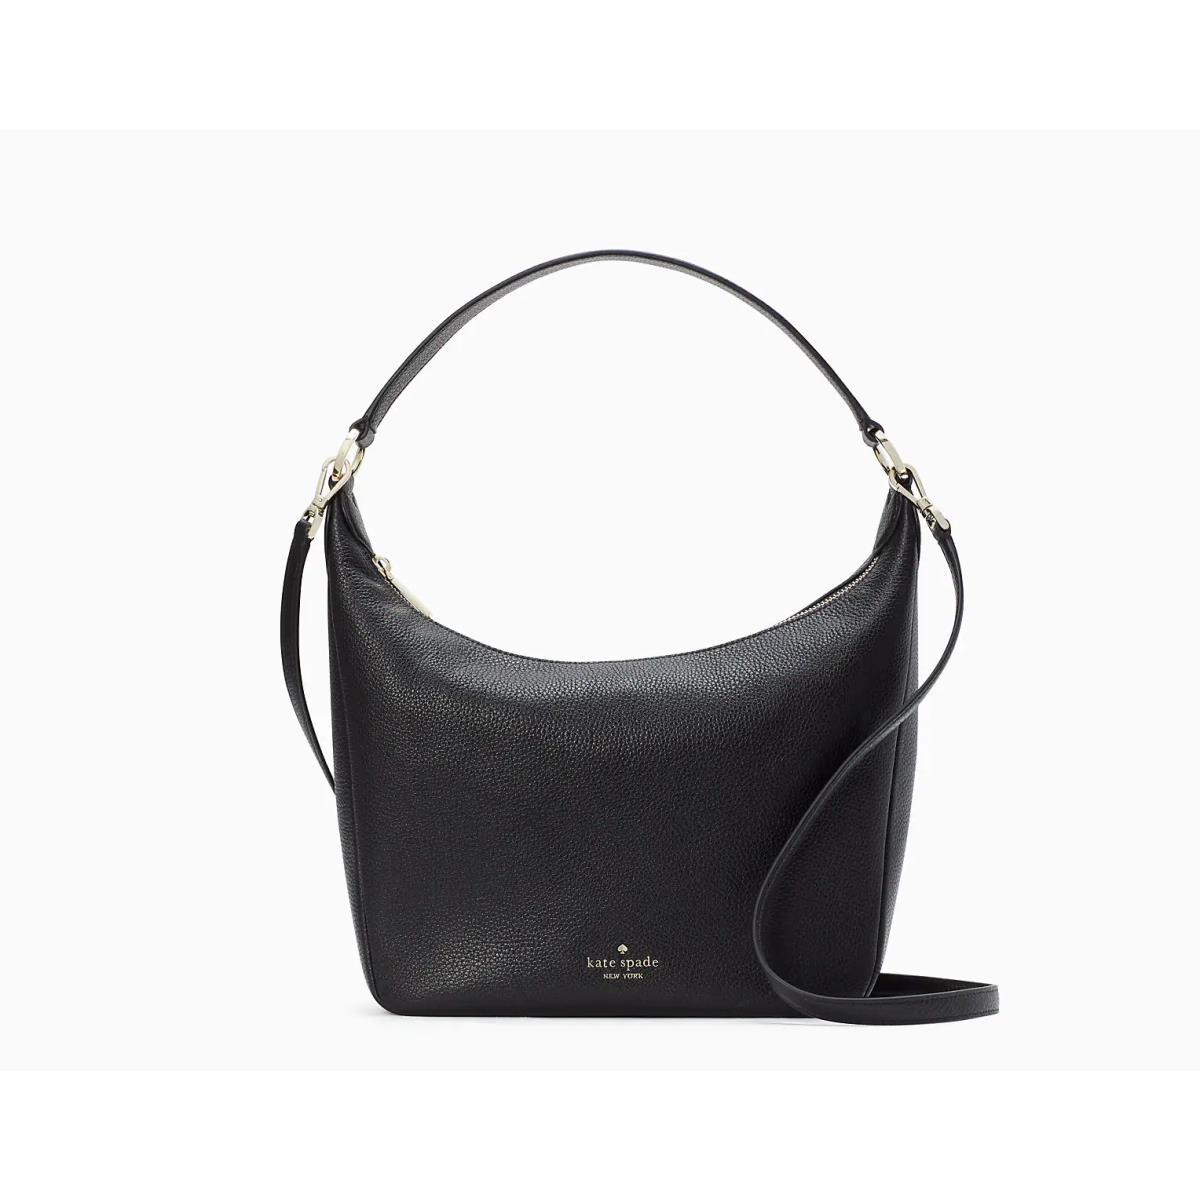 Kate Spade Leila Shoulder Bag Black Leather Purse Medium Single Compart - Handle/Strap: Black, Hardware: Light Gold, Exterior: Black